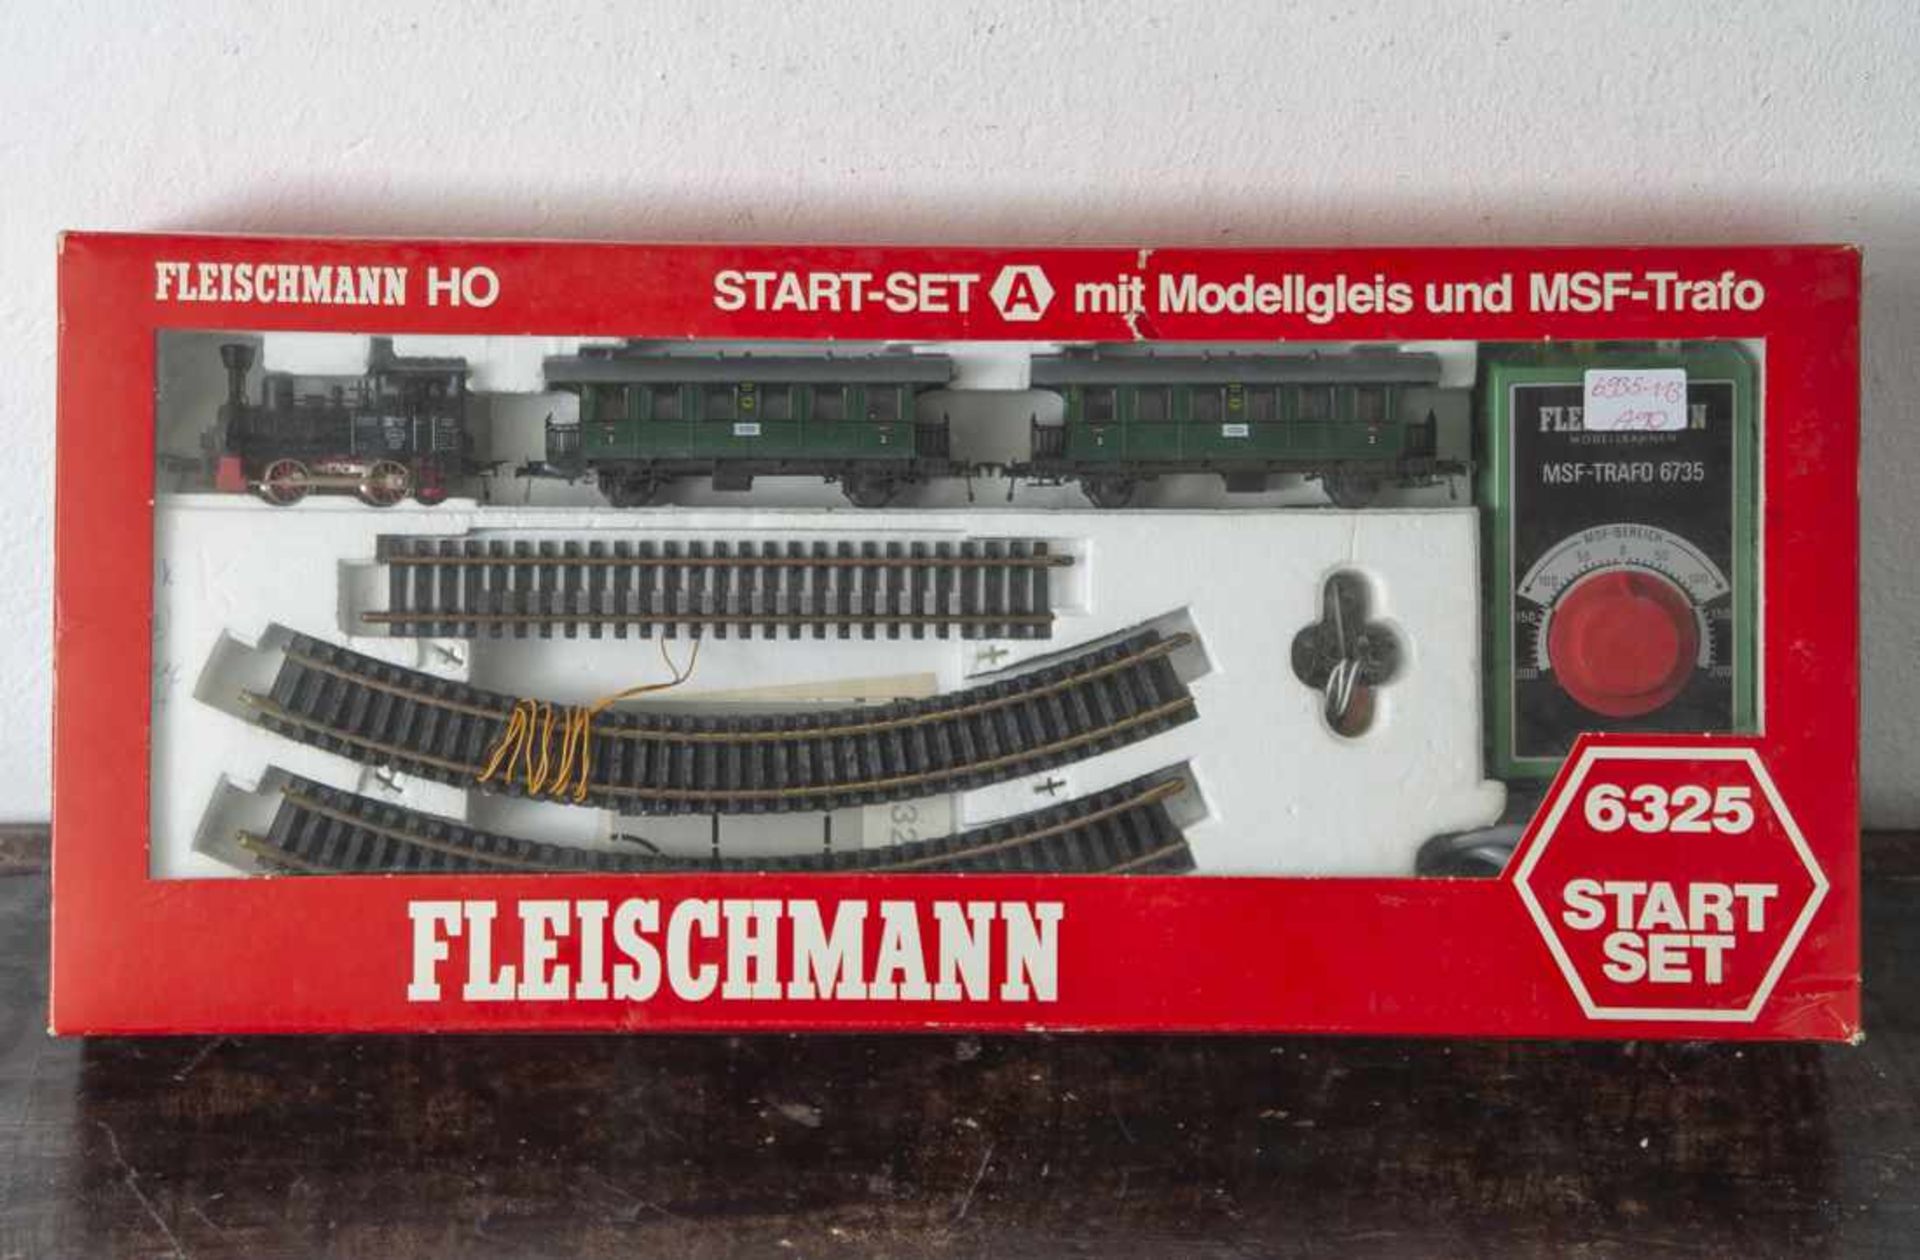 Fleischmann H0 Start-Set 6325, mit Modelgleisen und MSF-Trafo 6735, in originalem Karton, m.